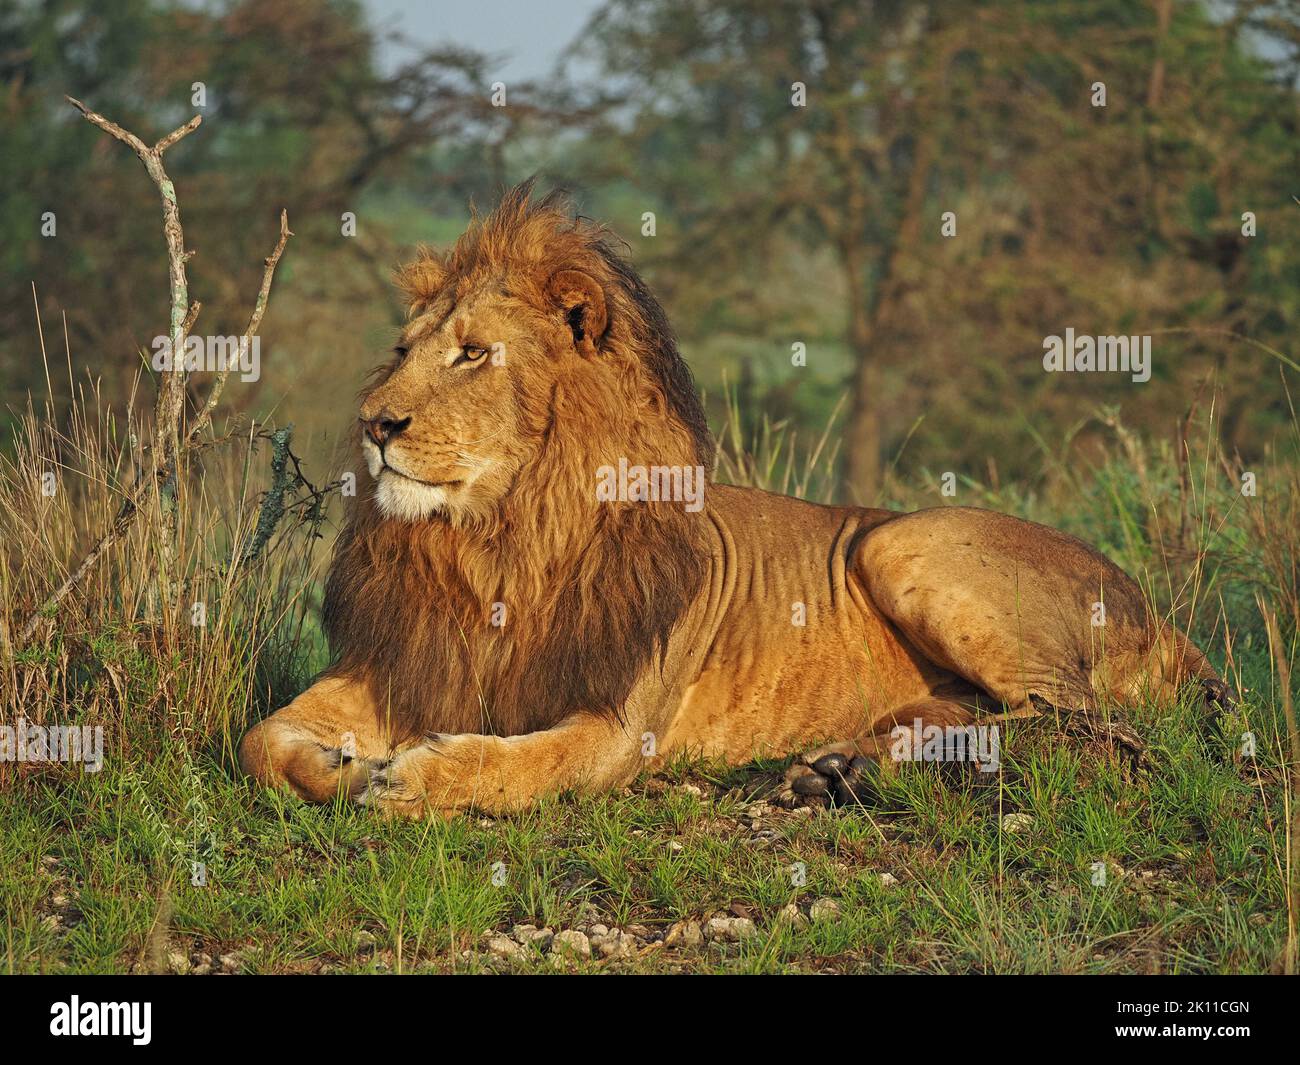 Potente Leone maschile imperioso adulto (Panthera leo) con criniera scura in erba dewy e luce d'alba dorata in Mara maggiore, Kenya, Africa Foto Stock